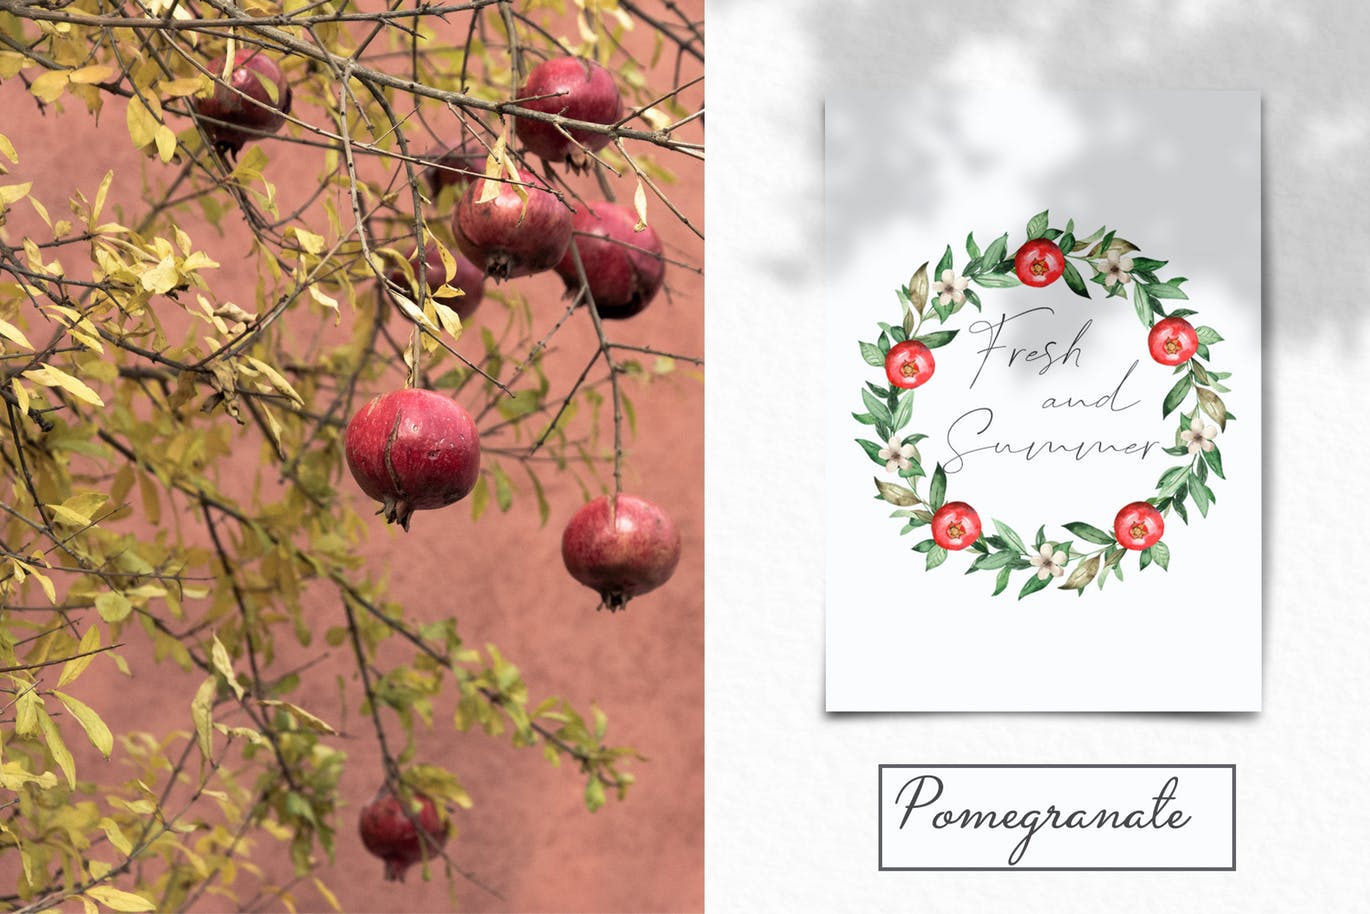 水彩石榴剪贴画/花框/花环第一素材精选设计素材 Watercolor pomegranate. Clipart, frames, wreaths插图(10)